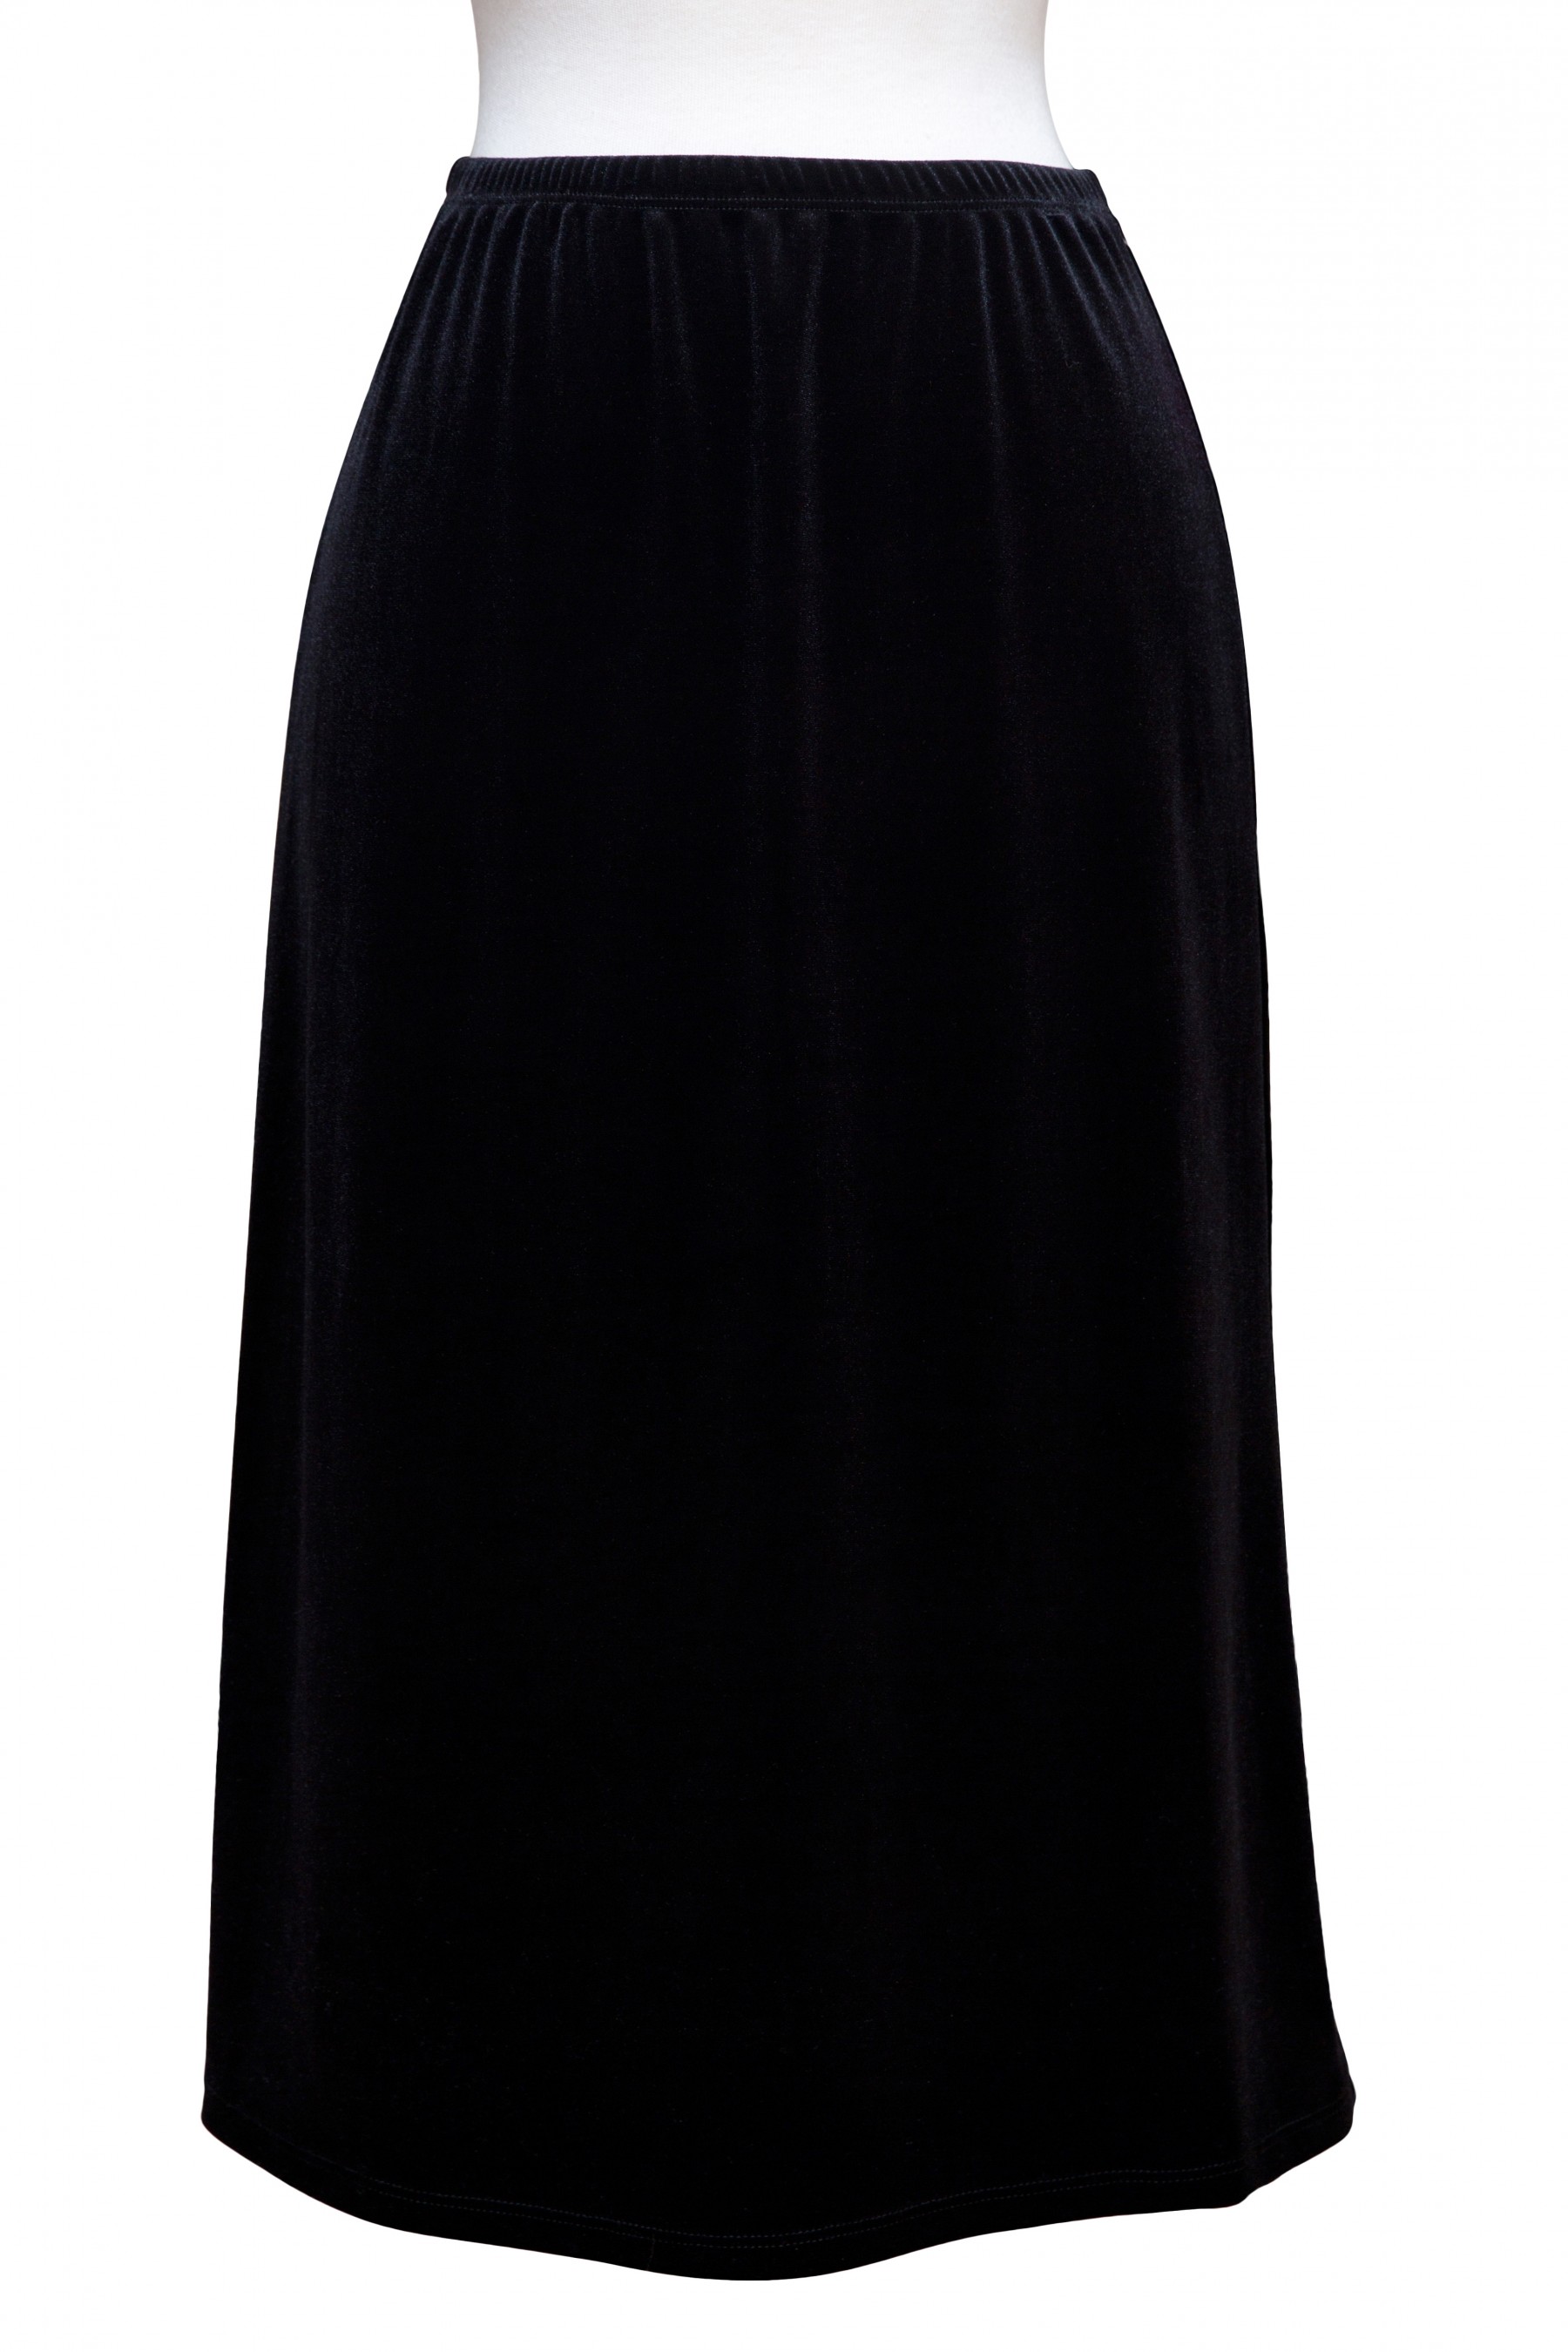 Black Velvet A-Line Mid-Length Skirt - SKIRTS